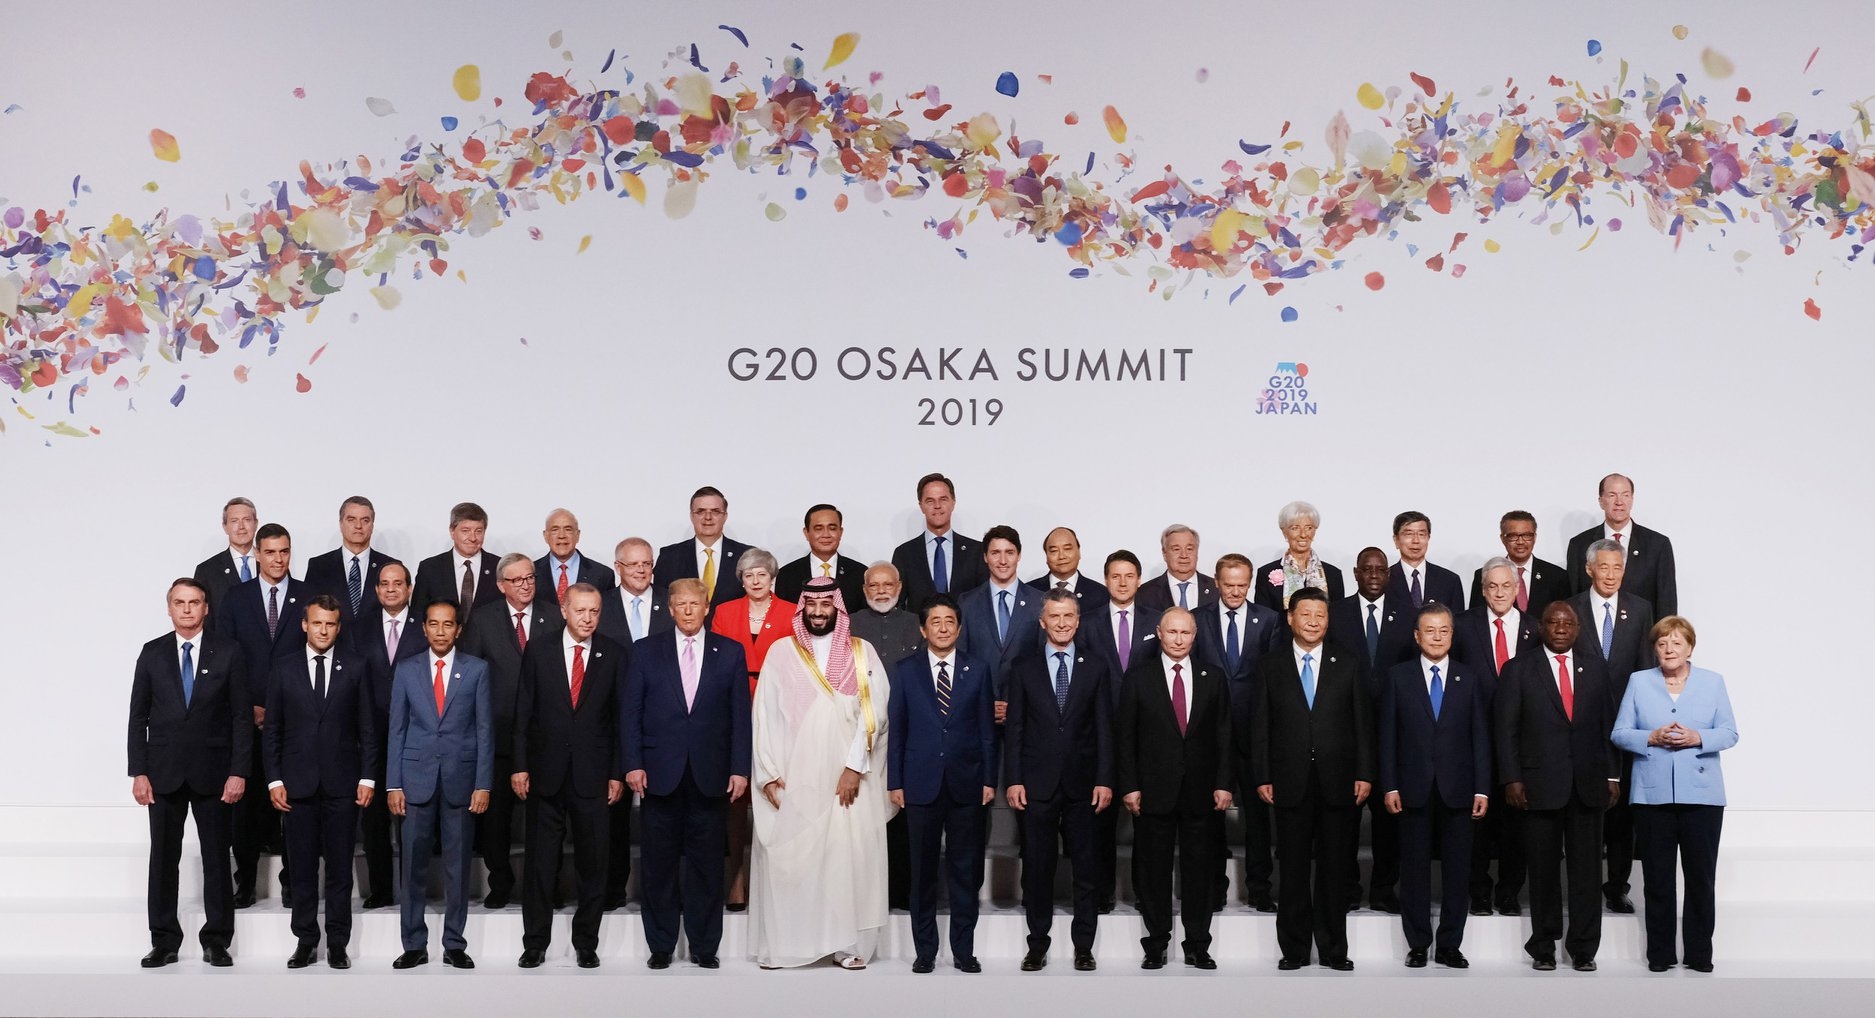 G20-dən kim nə qazandı? - Politoloq rəyi